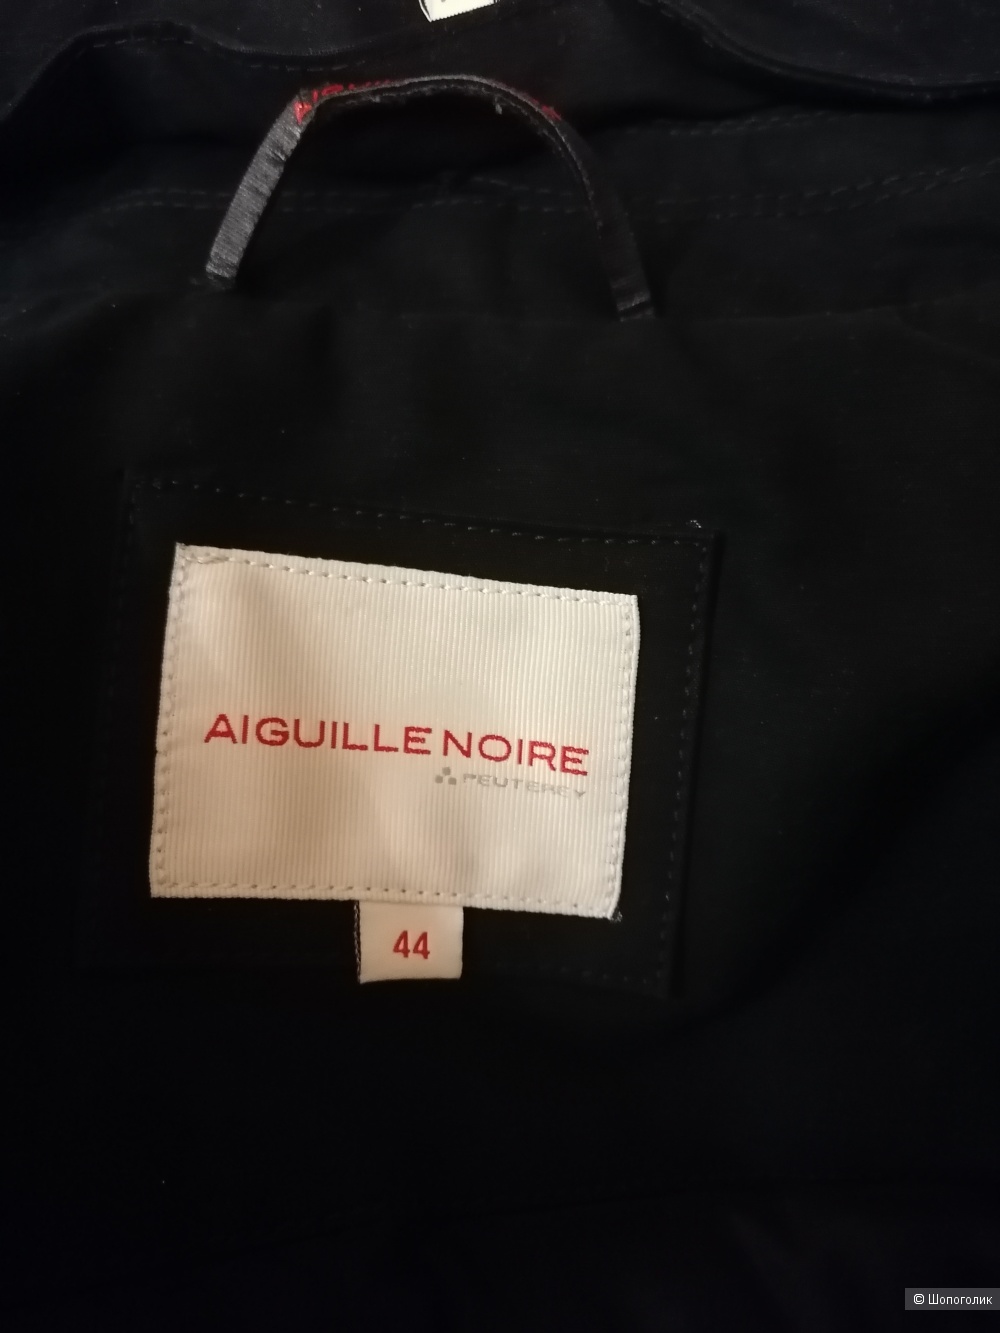 Пуховик Aiguille Noire Peuterey размер 44 итальянский